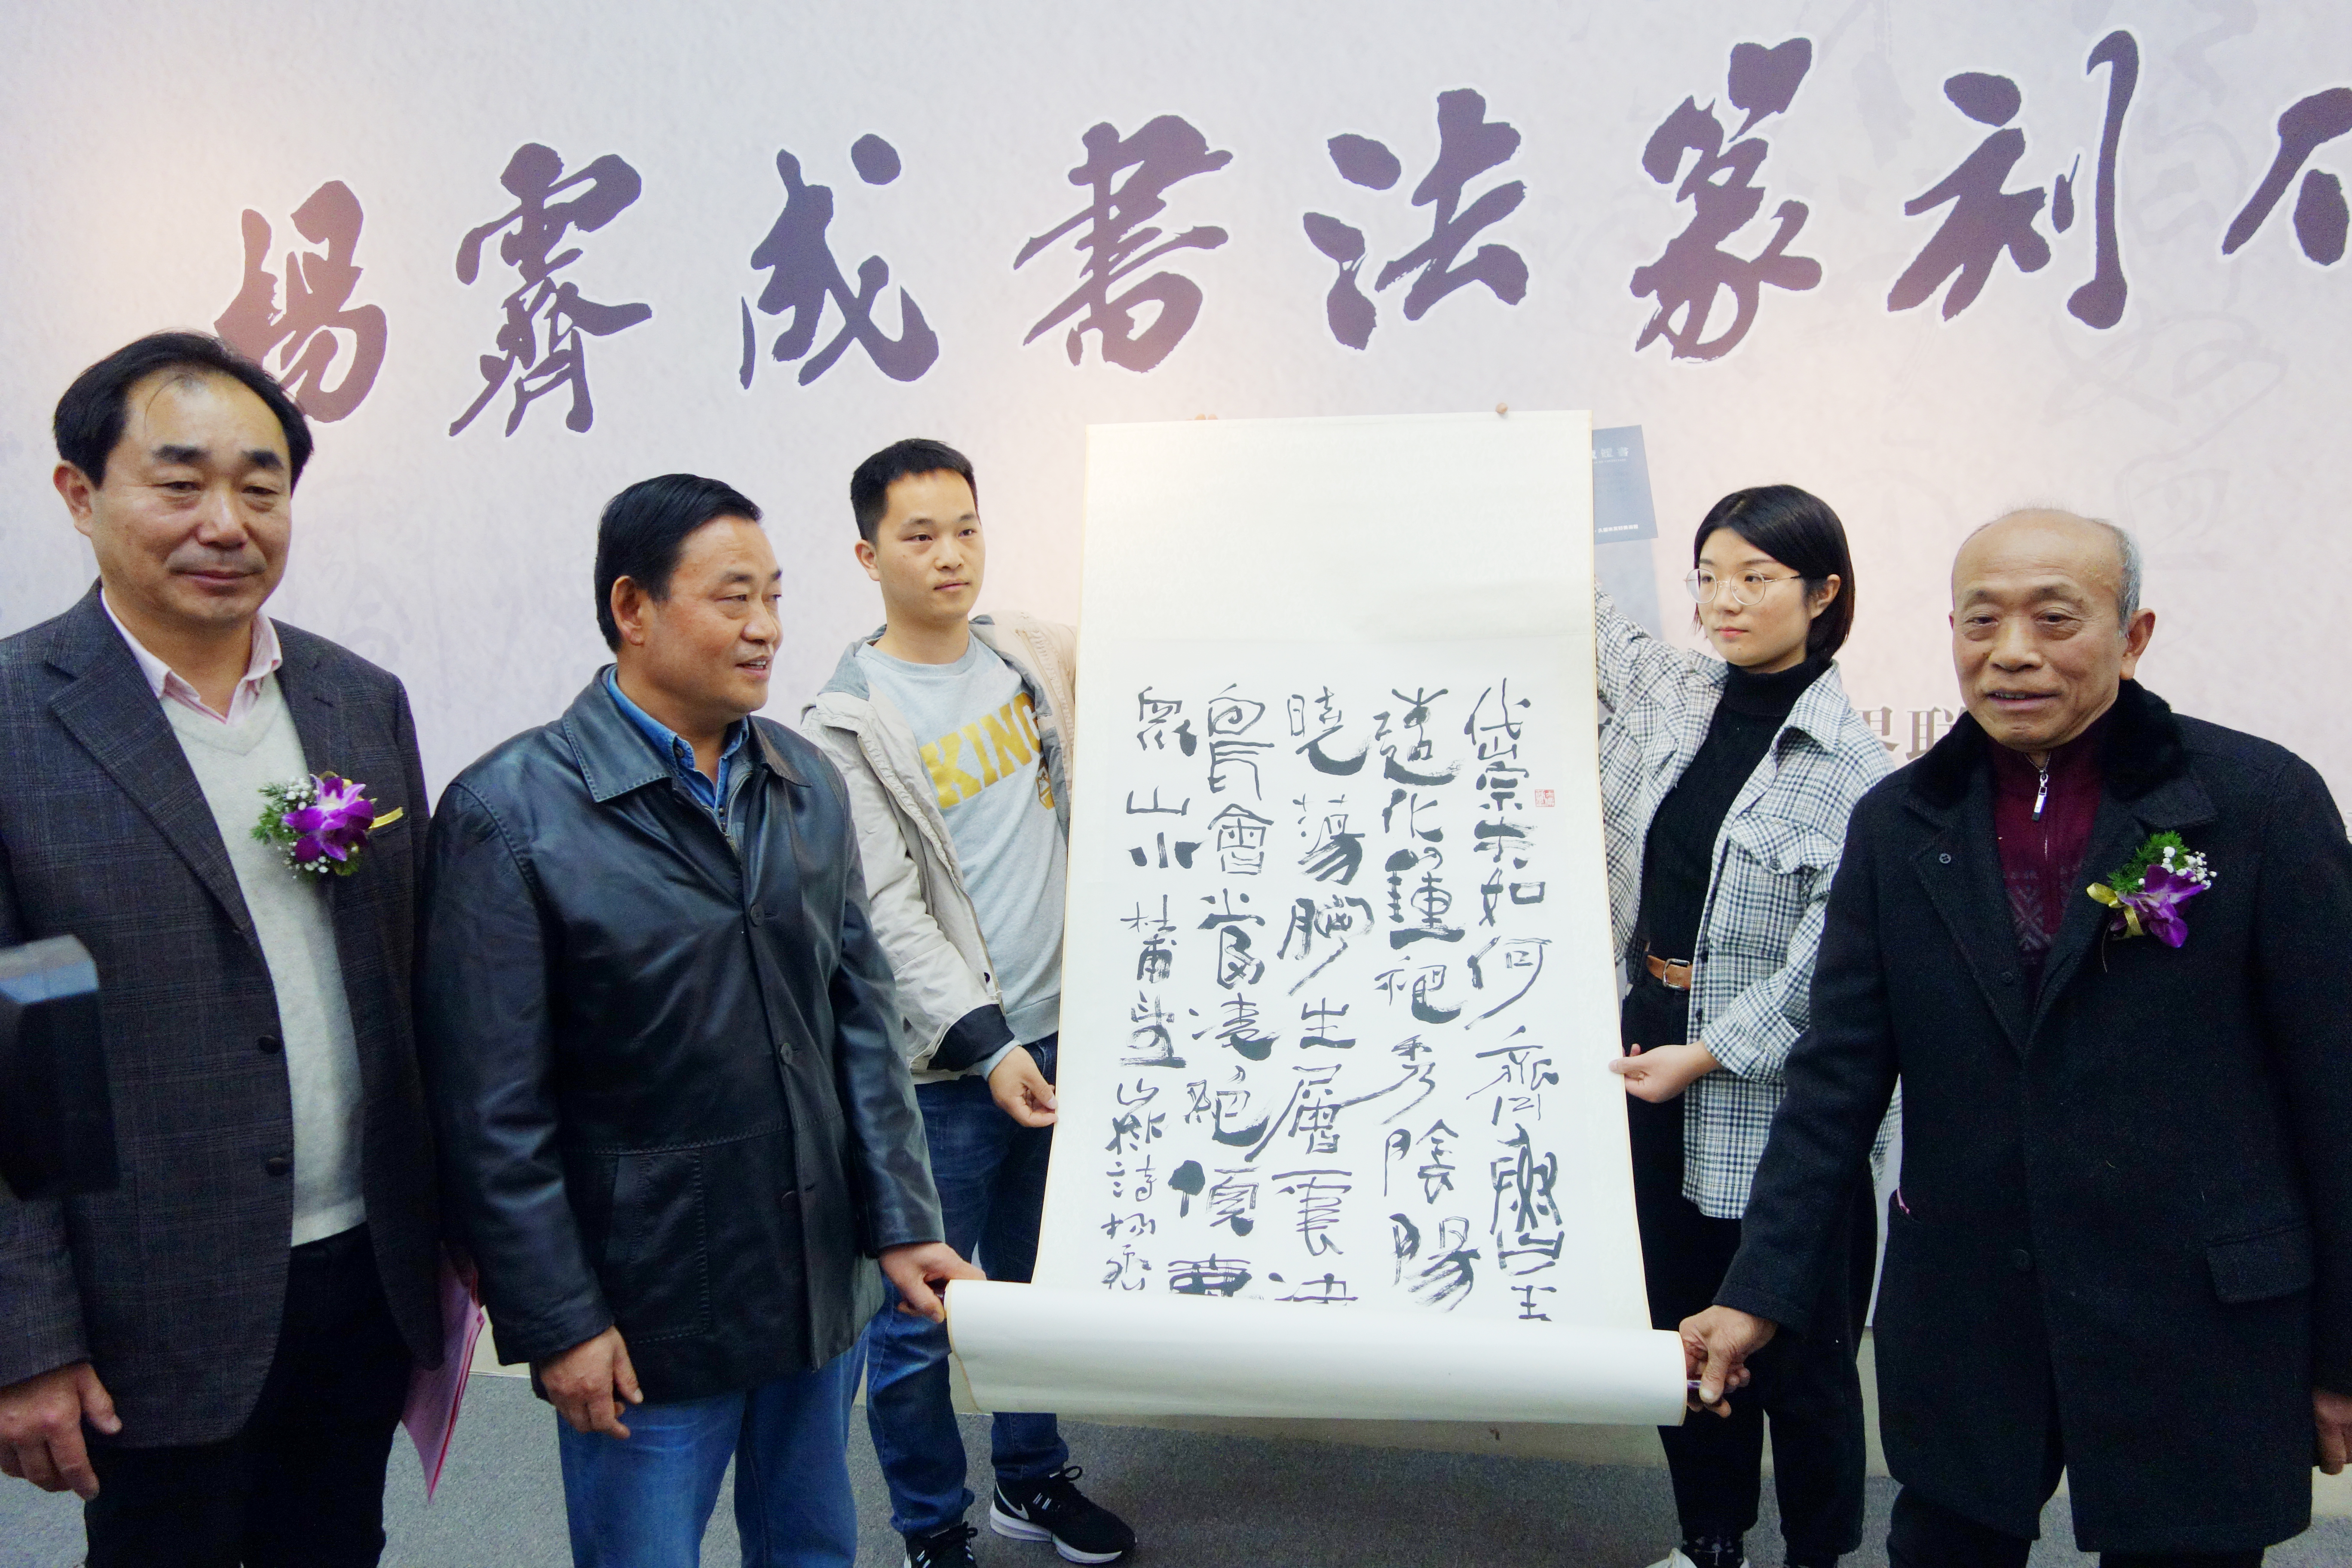 杨霁成先生向合肥久留米美术馆赠送书法作品